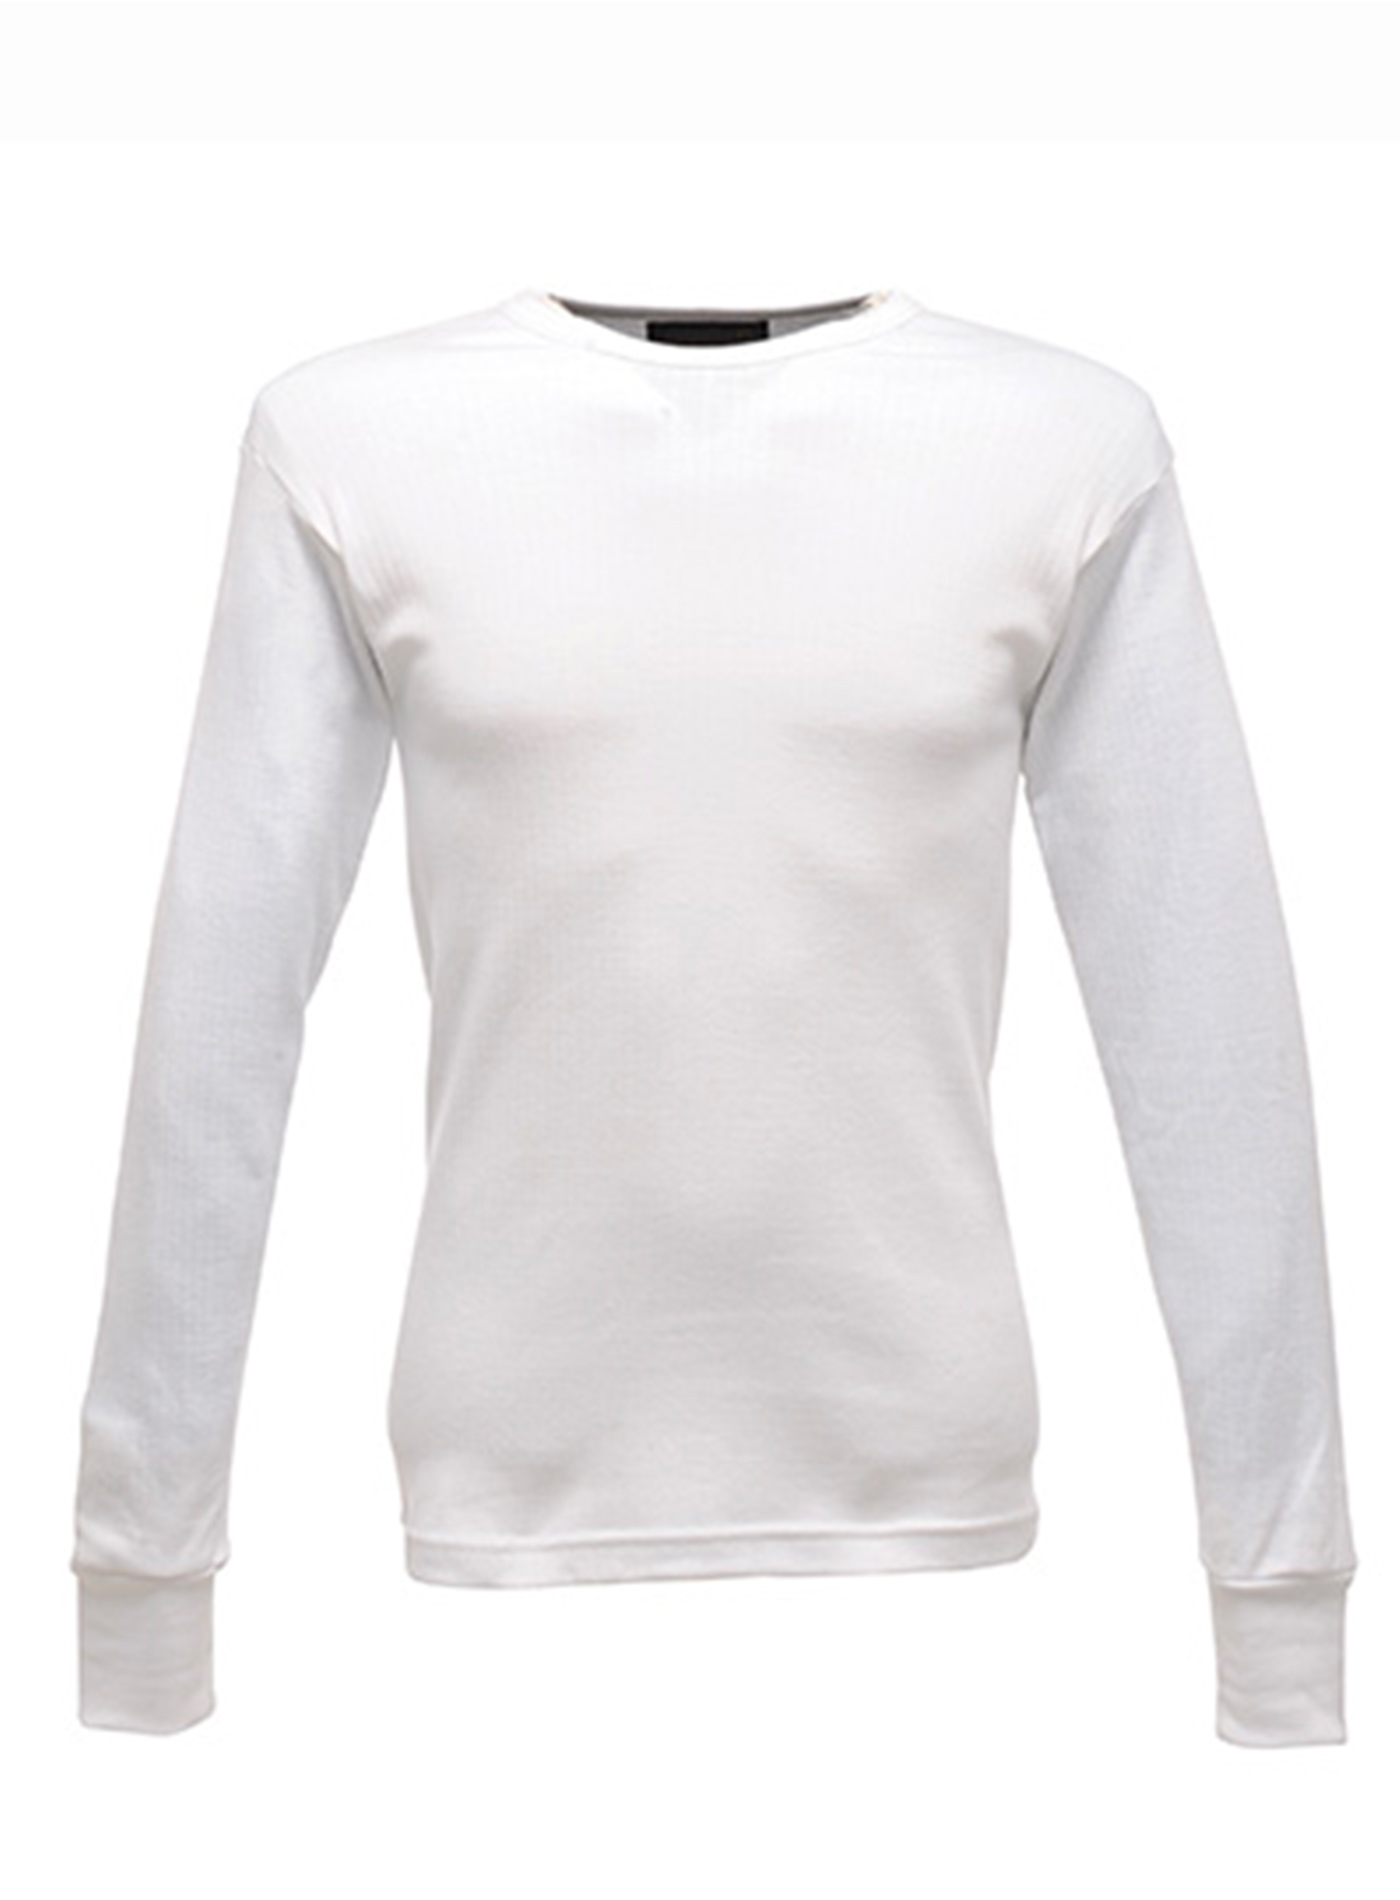 Pánské tričko Thermal - Bílá M